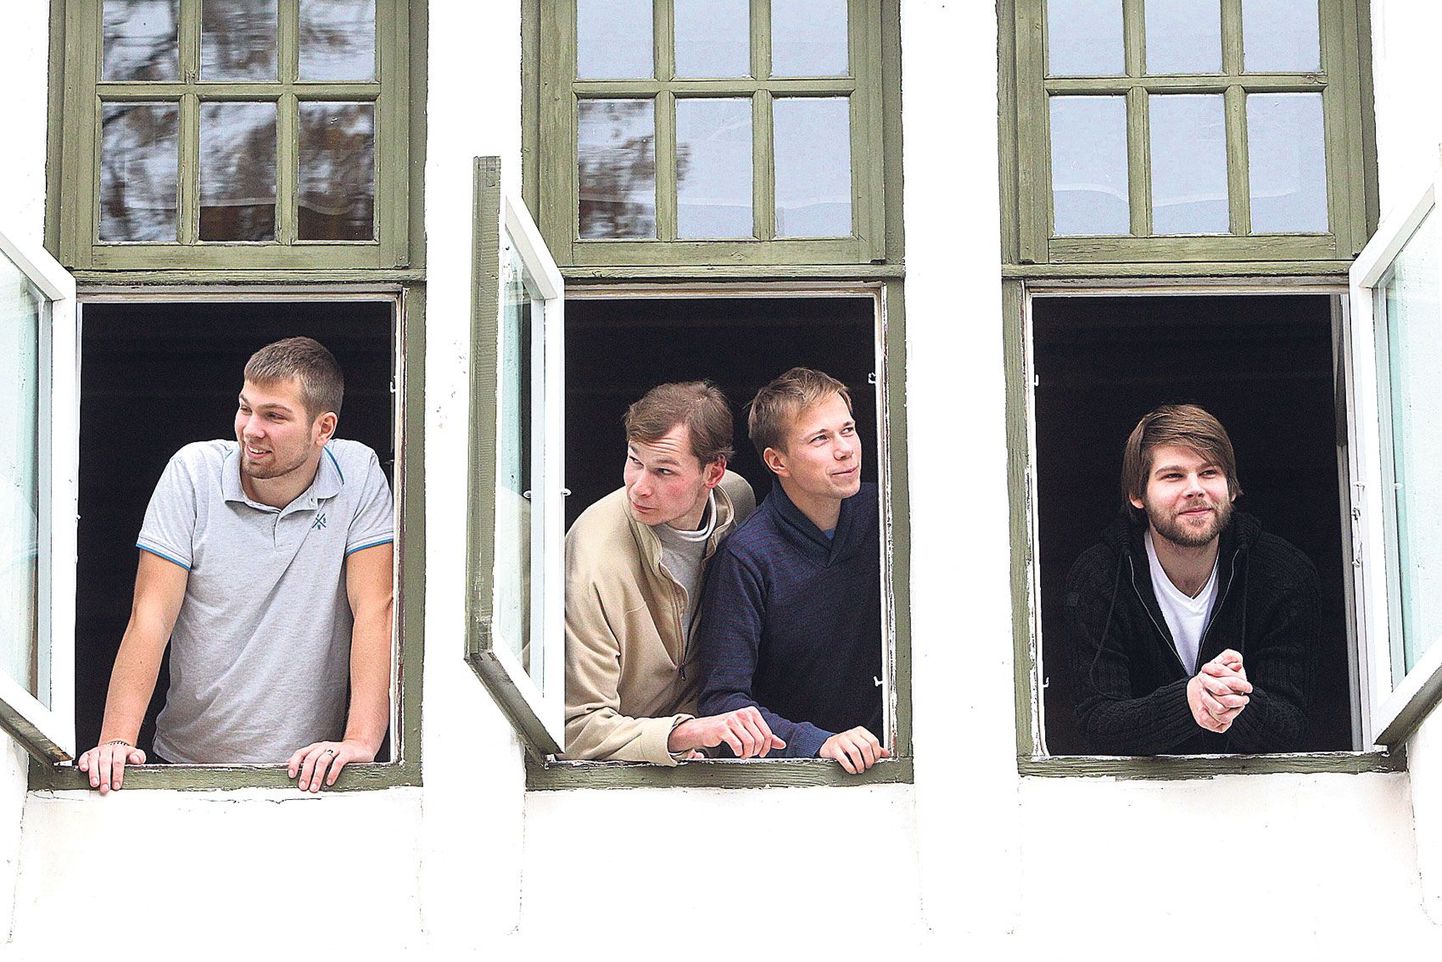 Von Dorpat soovib konkursil eelkõige tutvustada oma muusikat ja näidata, millega kollektiiv tegeleb. Liikmed Kaarel Adamson (vasakult), Johannes Vedru, Henri Lohk ja Erki Veikar.